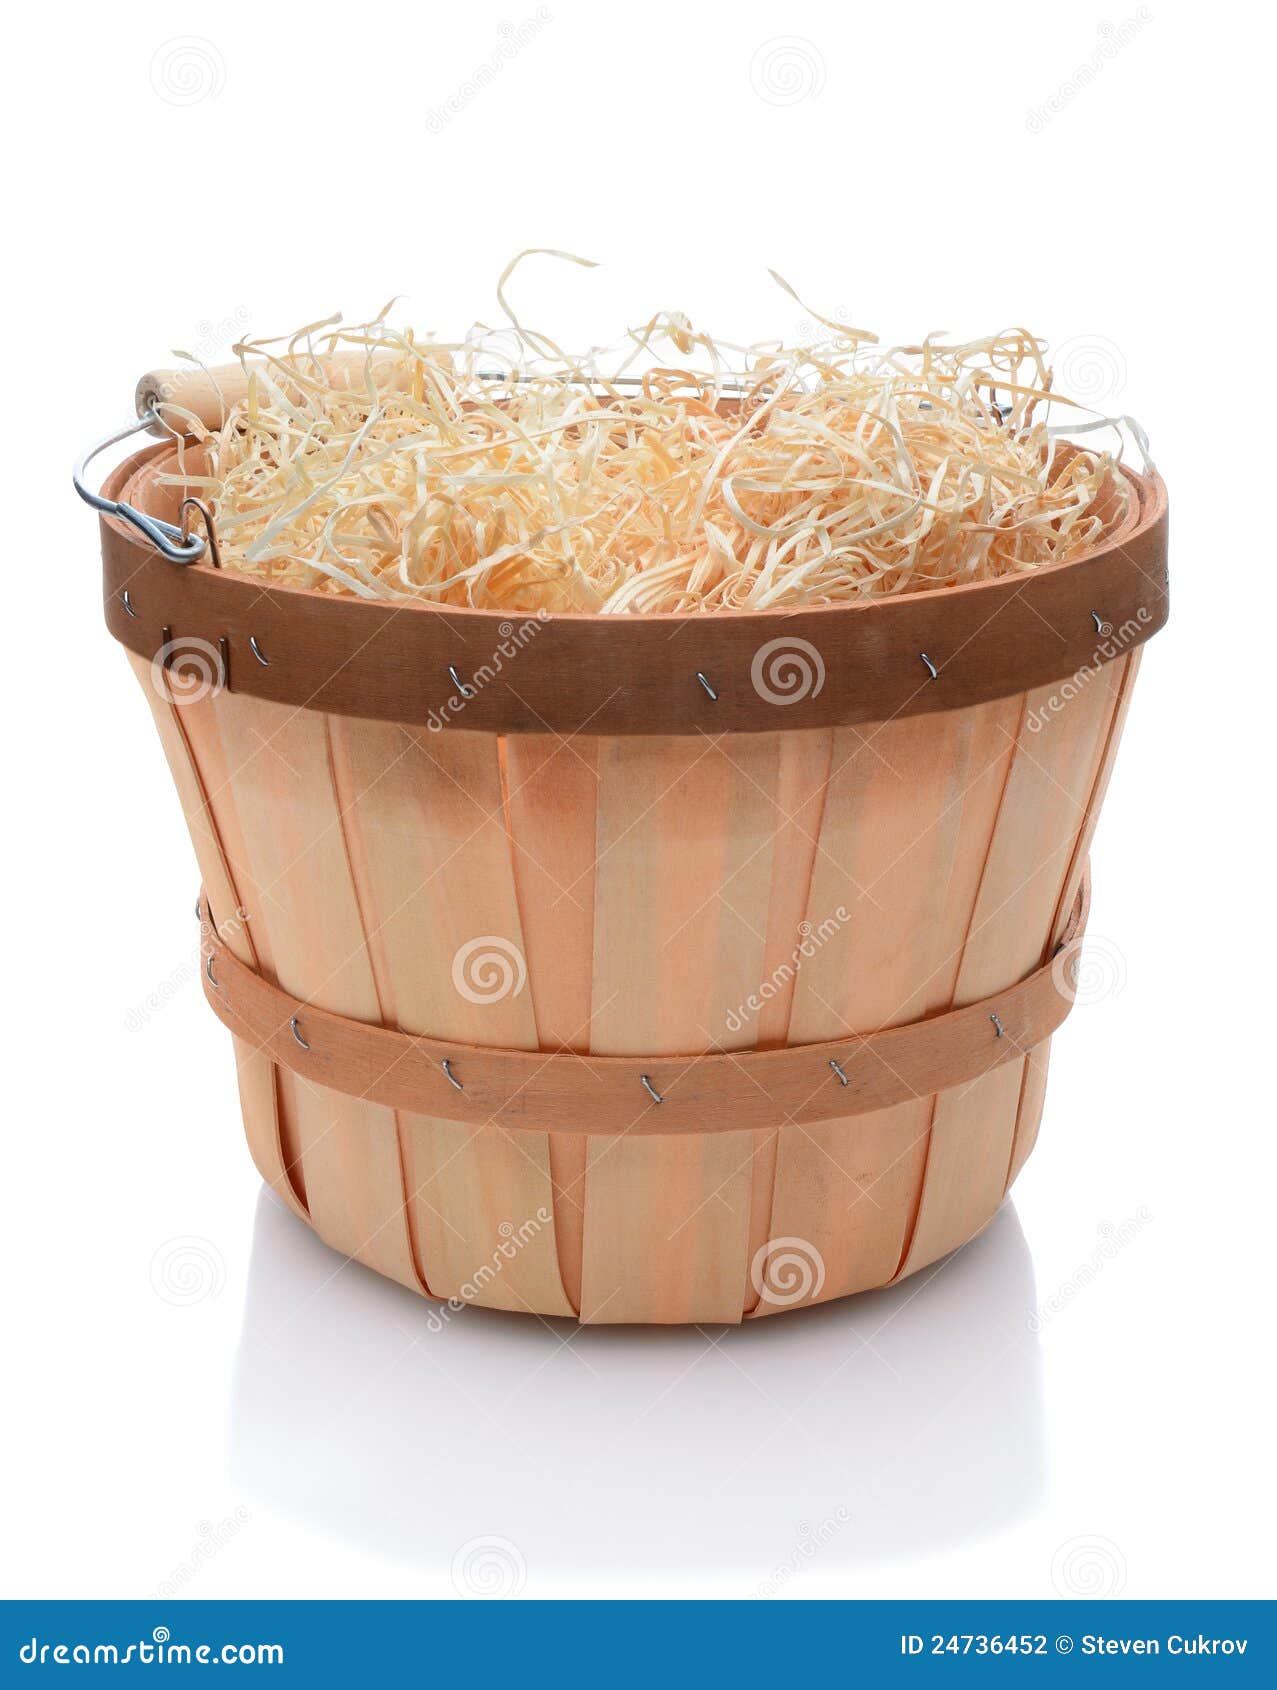 Bushel Basket with Wood Handle Stock Photo - Image of wood, straw